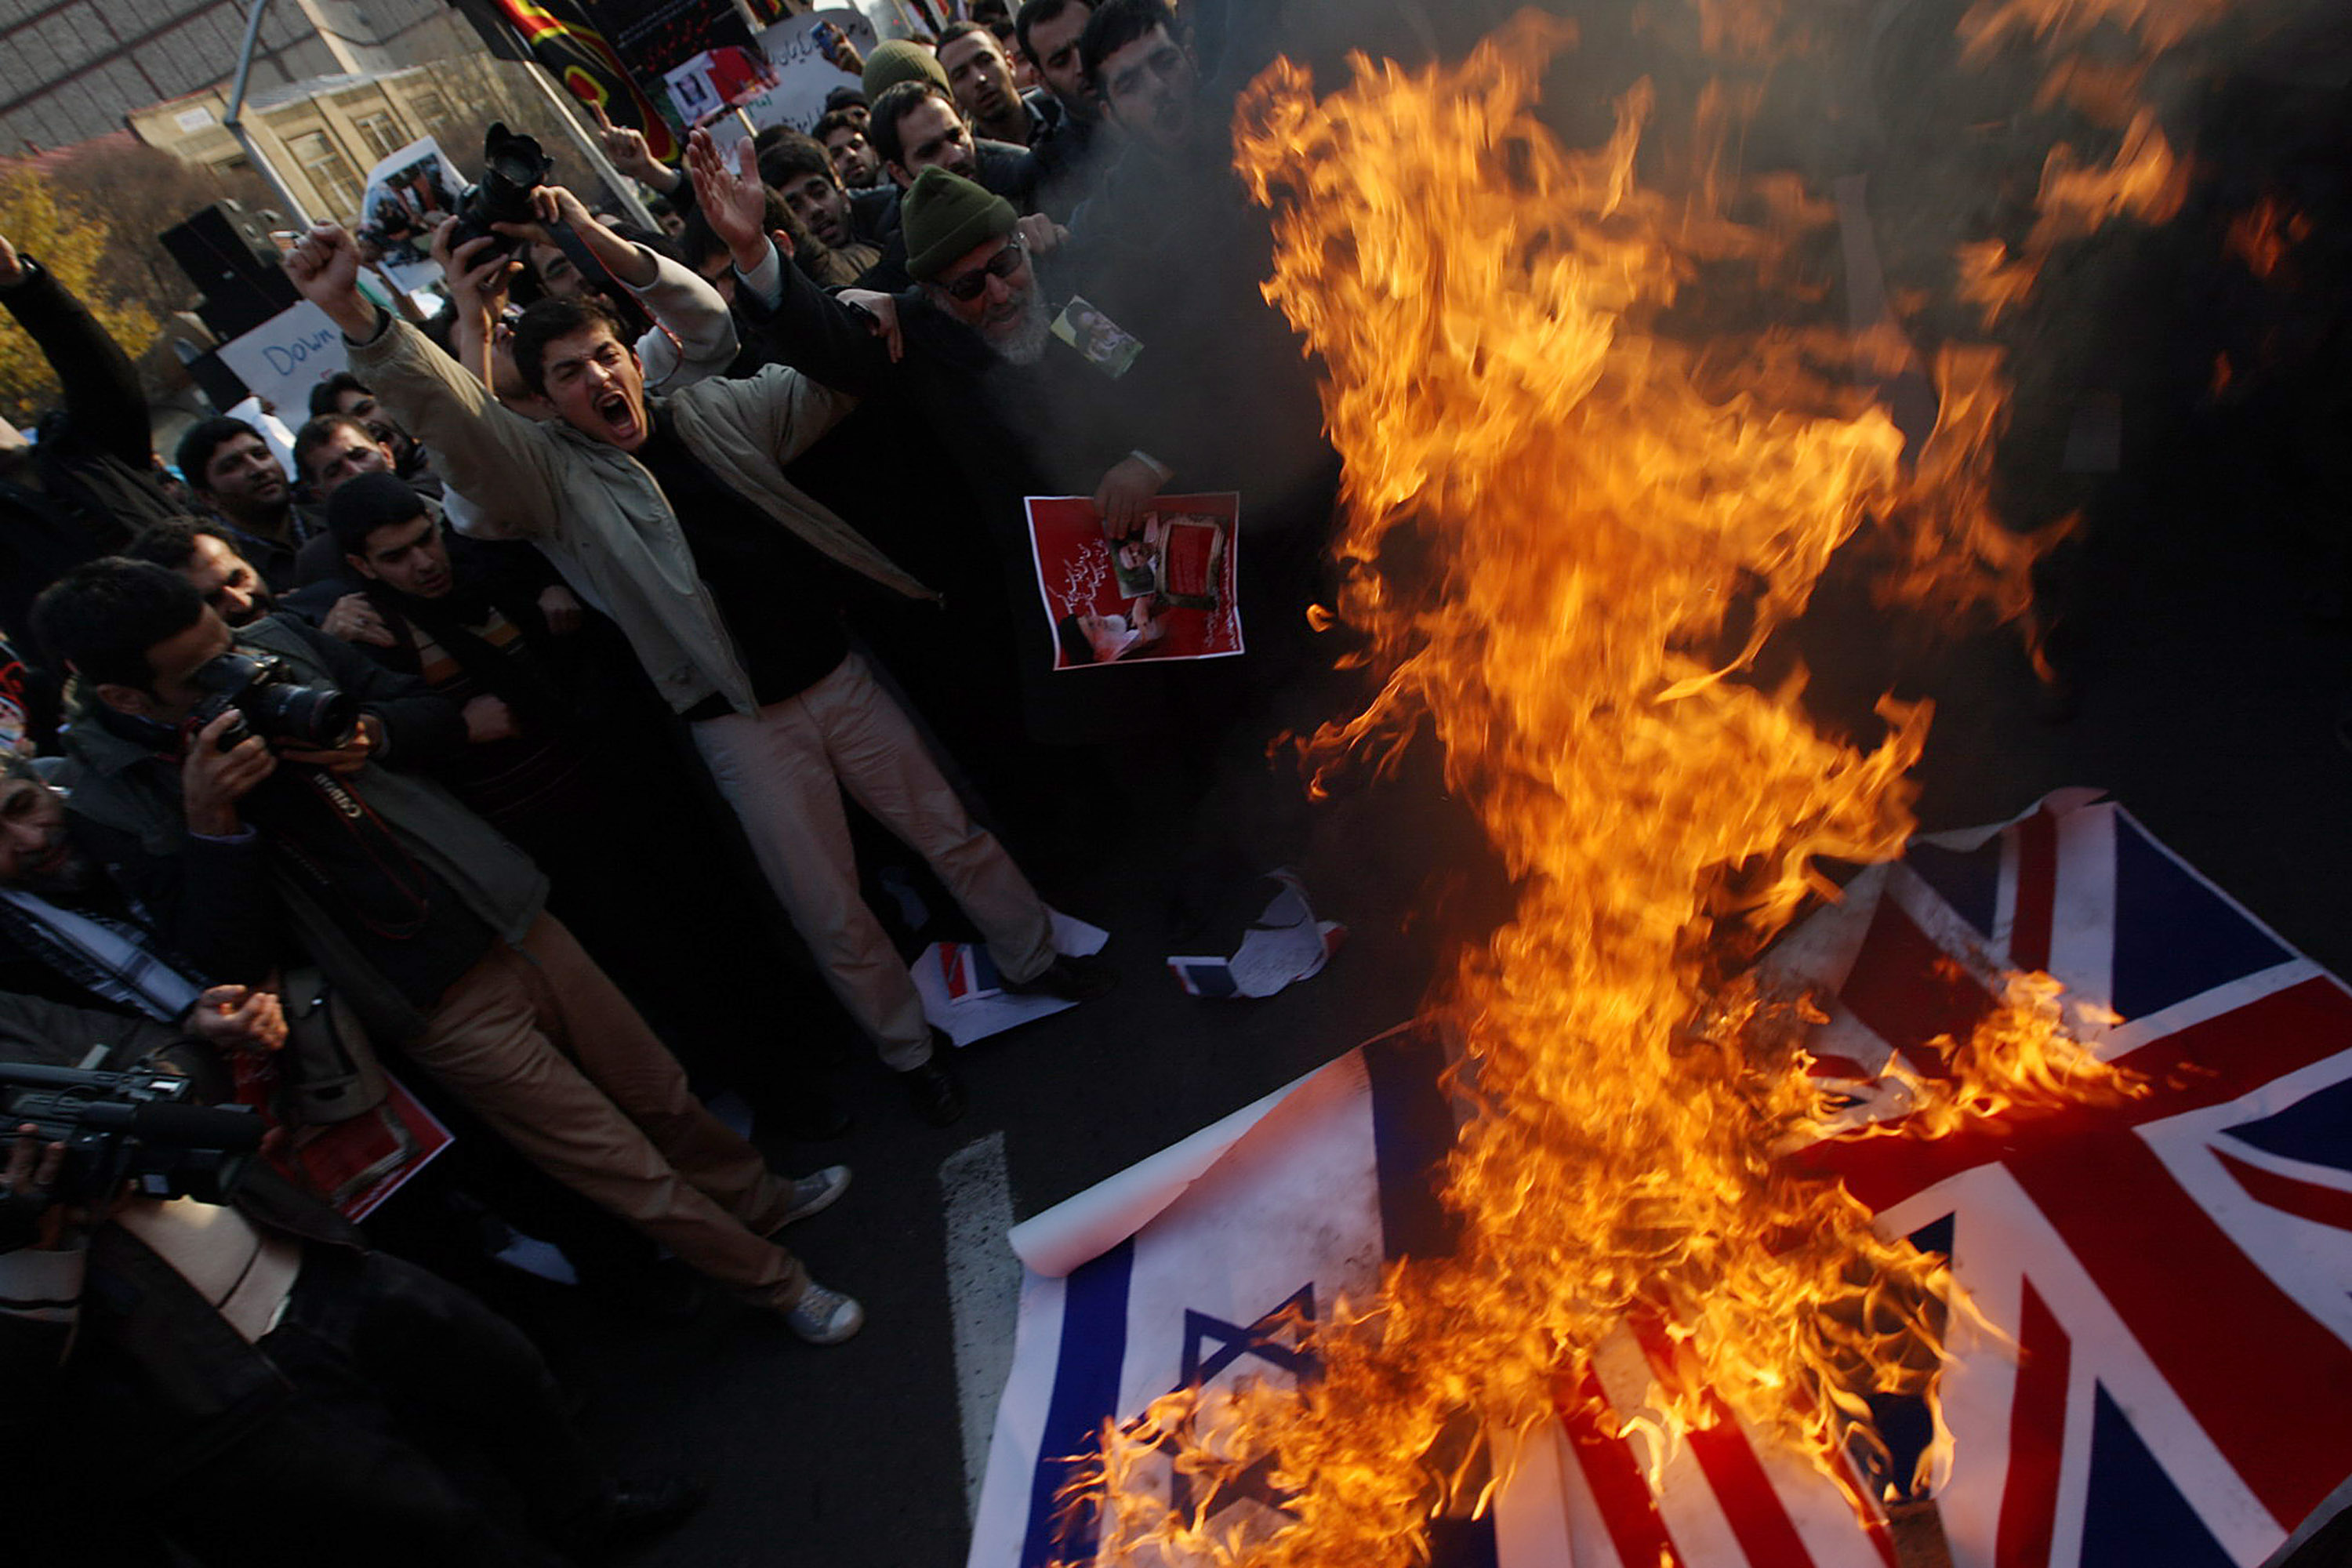 ООН, країни ЄС, США й Росія також засудили іранський уряд у зв'язку з нападом. Фото: FarsNews/Getty Images